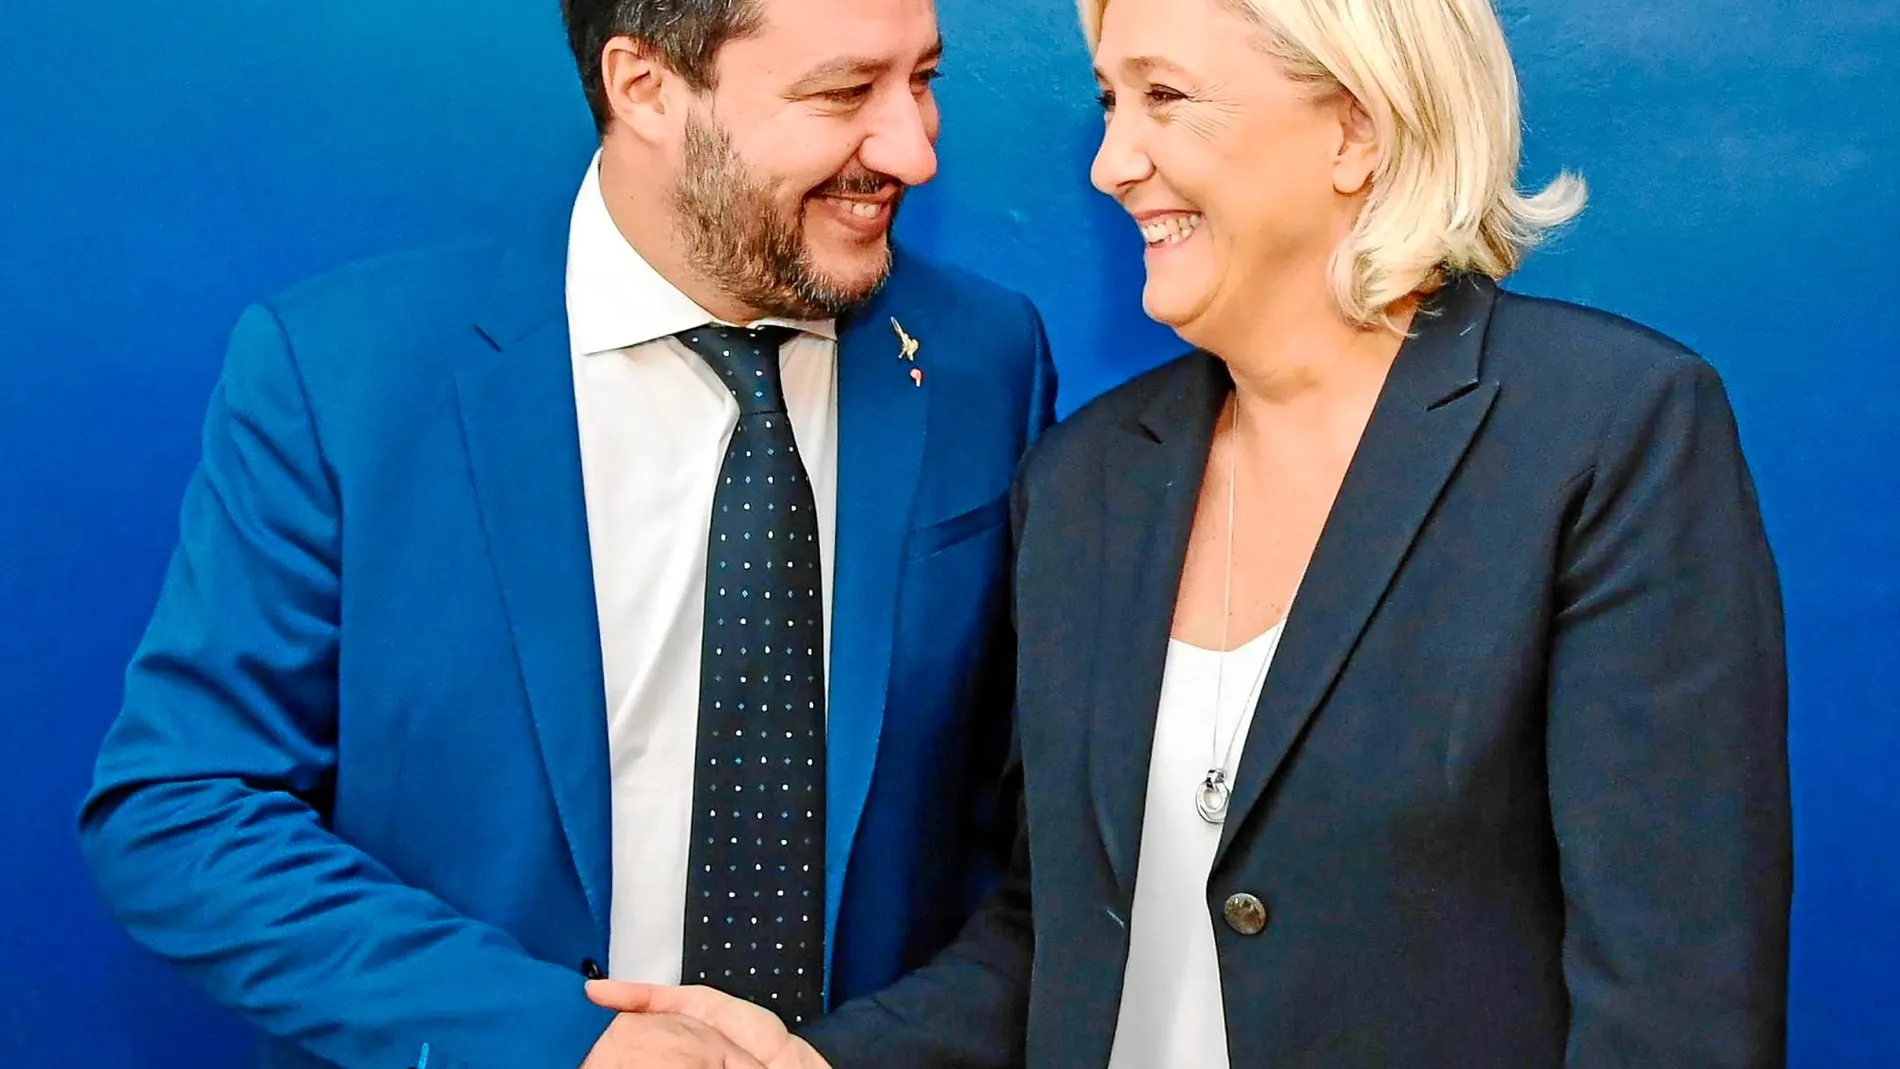 Los líderes de la ultraderecha italiana, Matteo Salvini, y francesa, Marine Le Pen / Ap